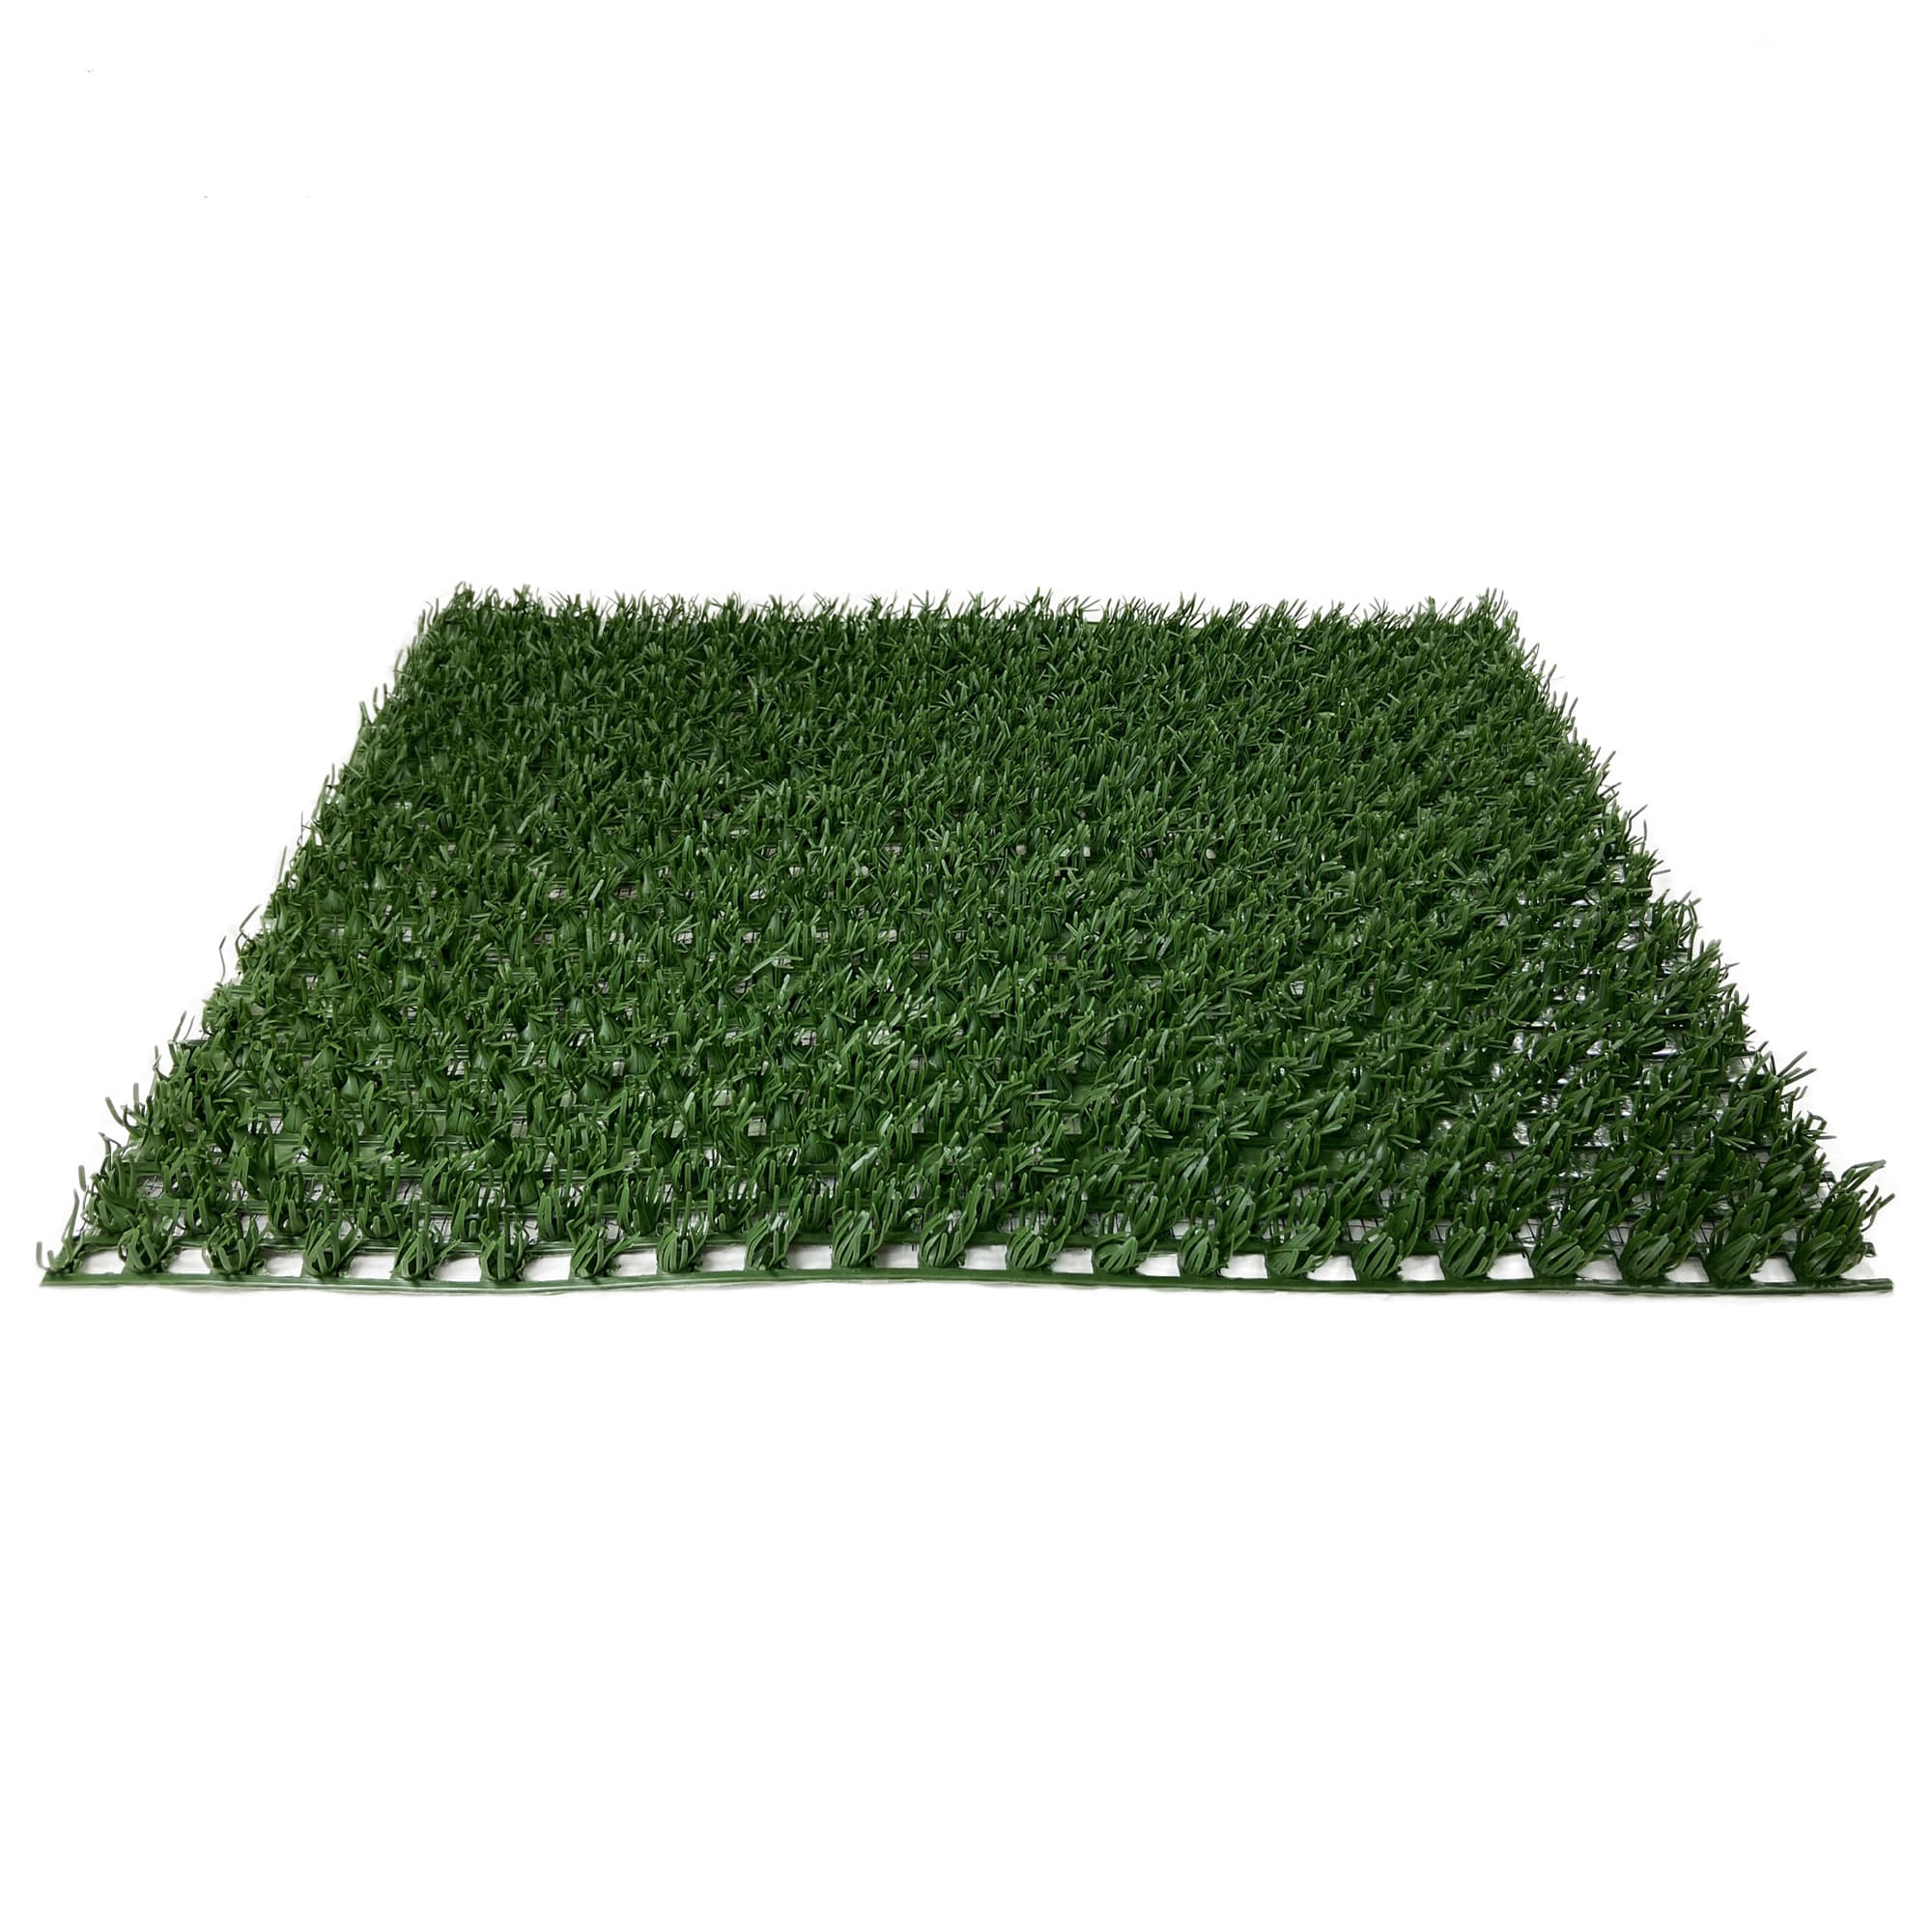 Green Heavy Indoor-Outdoor Artificial Grass Turf Area Rug Carpet